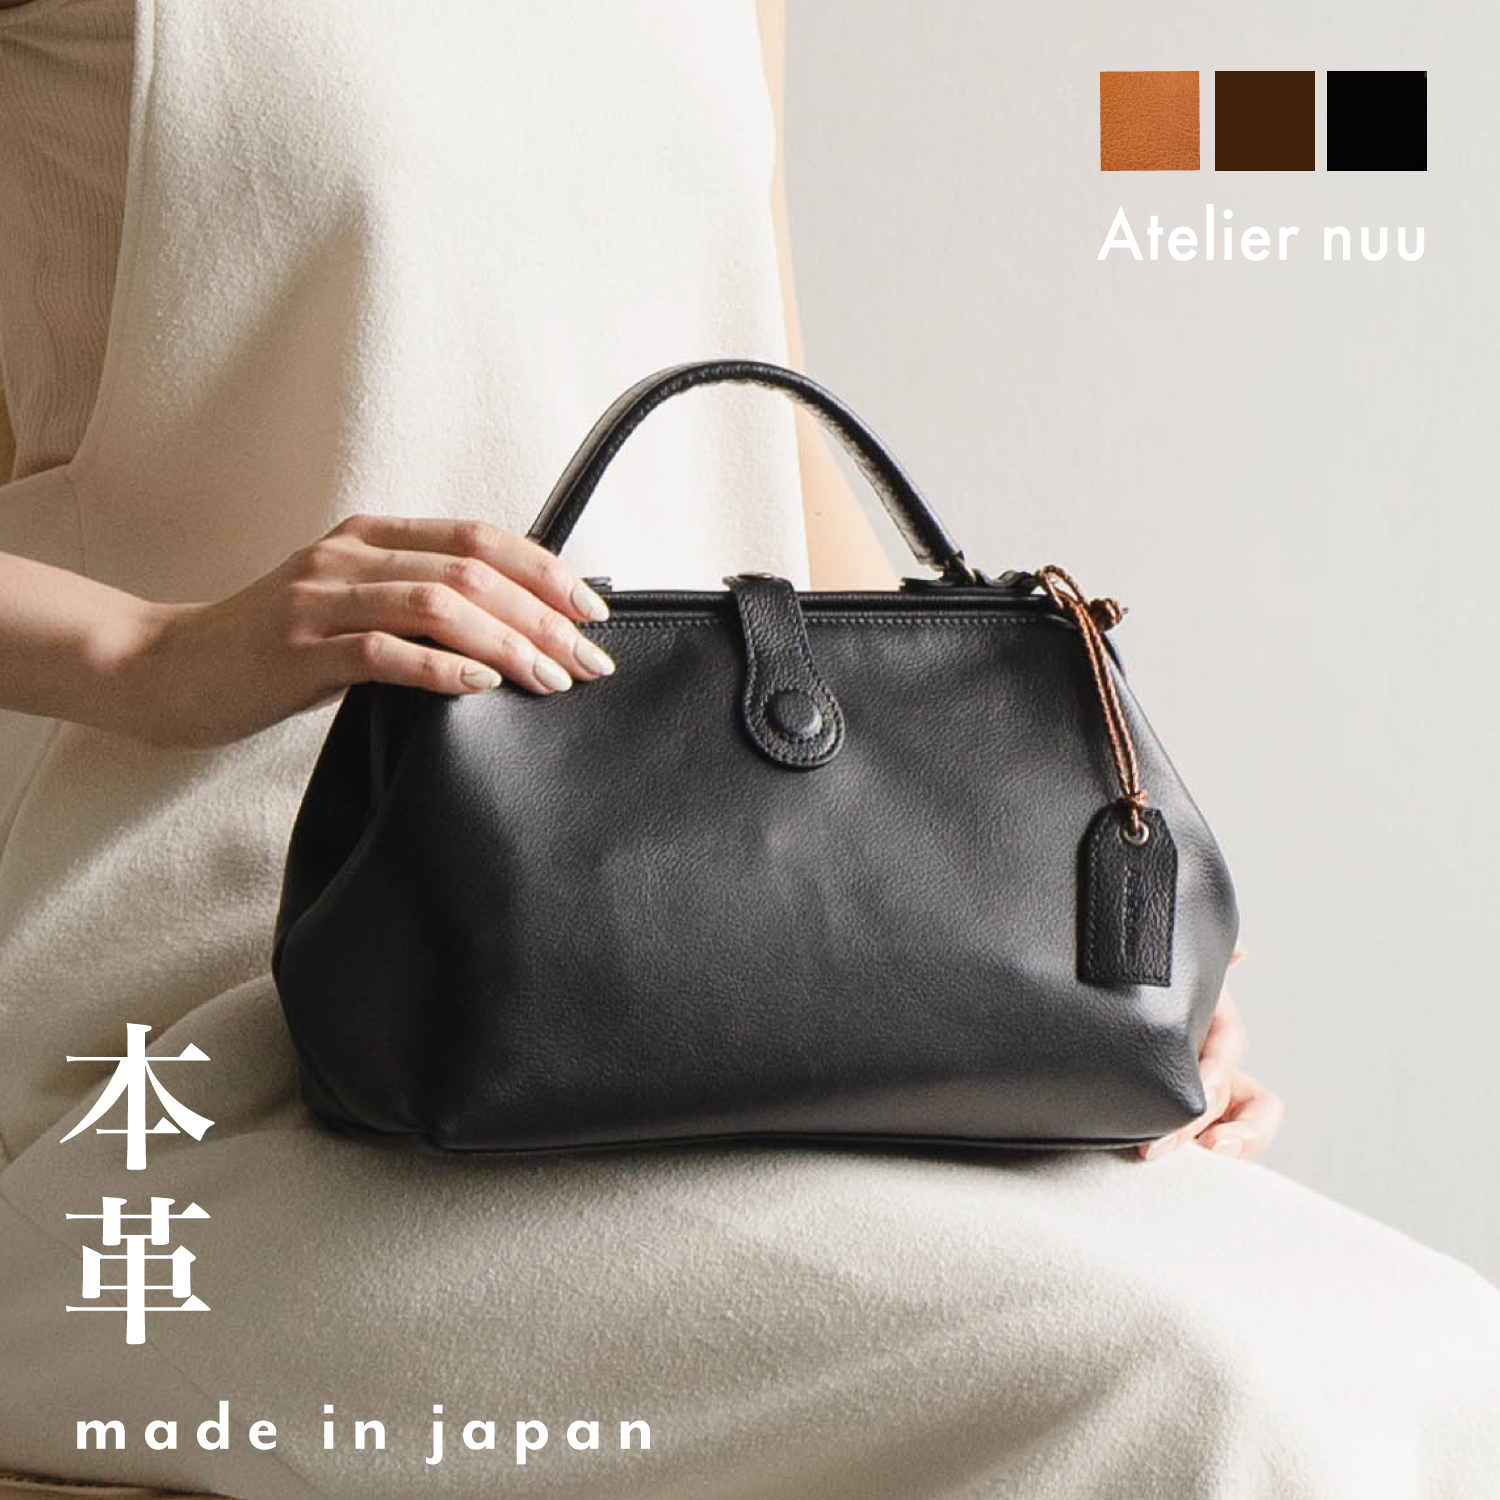 楽天市場 | Atelier nuu shop - 日本一のかばん産地「豊岡市」にござい